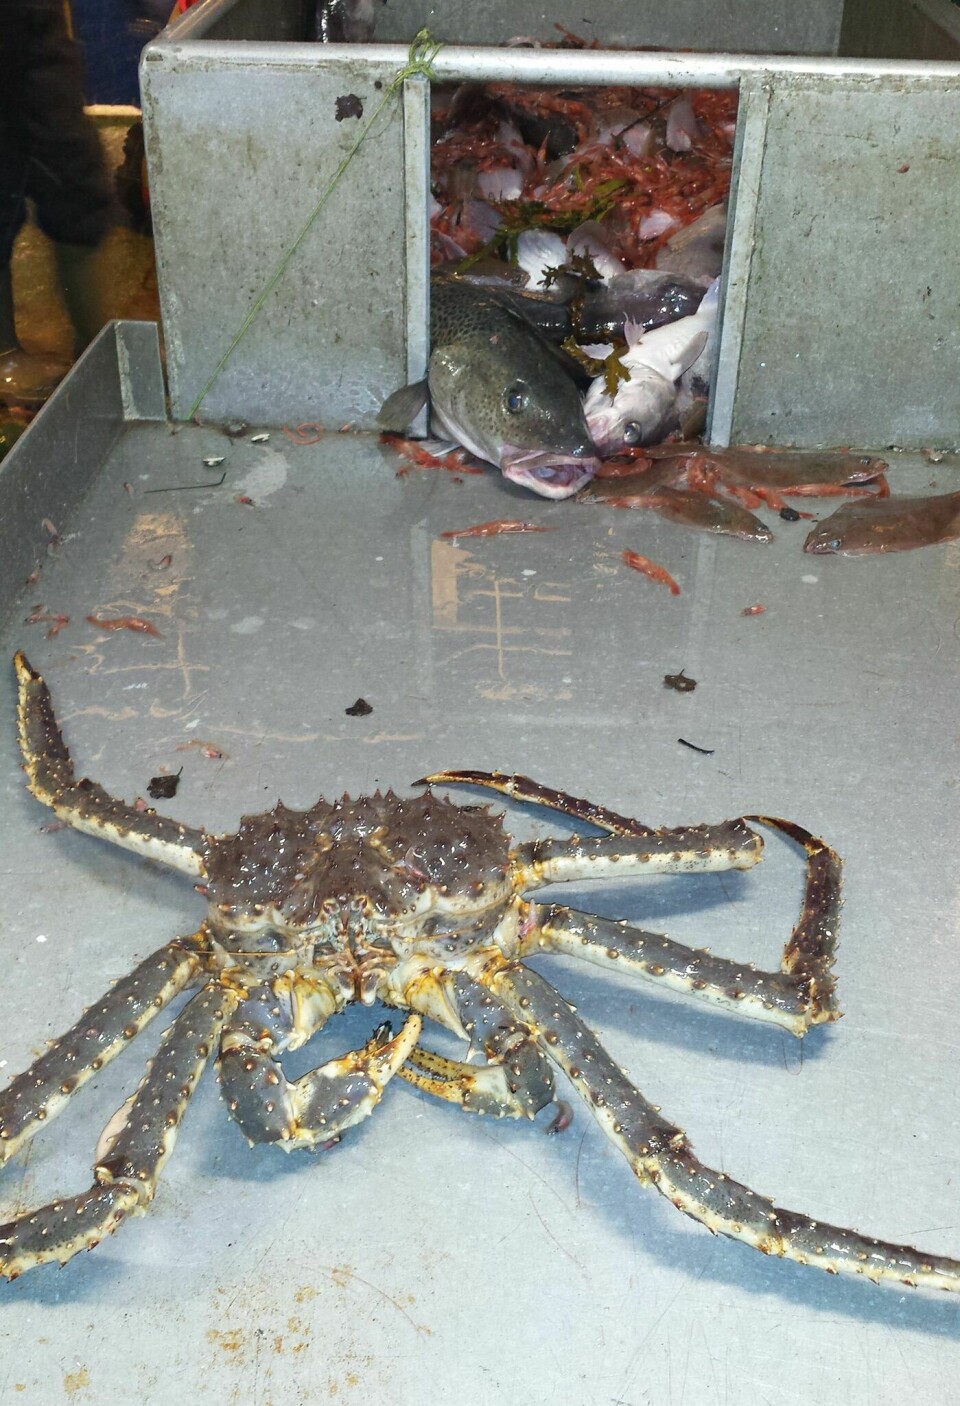 STOR KRABBE: Krabben som ble tatt med trål var ganske stor, med sine 3,4 kilo. (FOTO: EMMA KÄLLGREN)